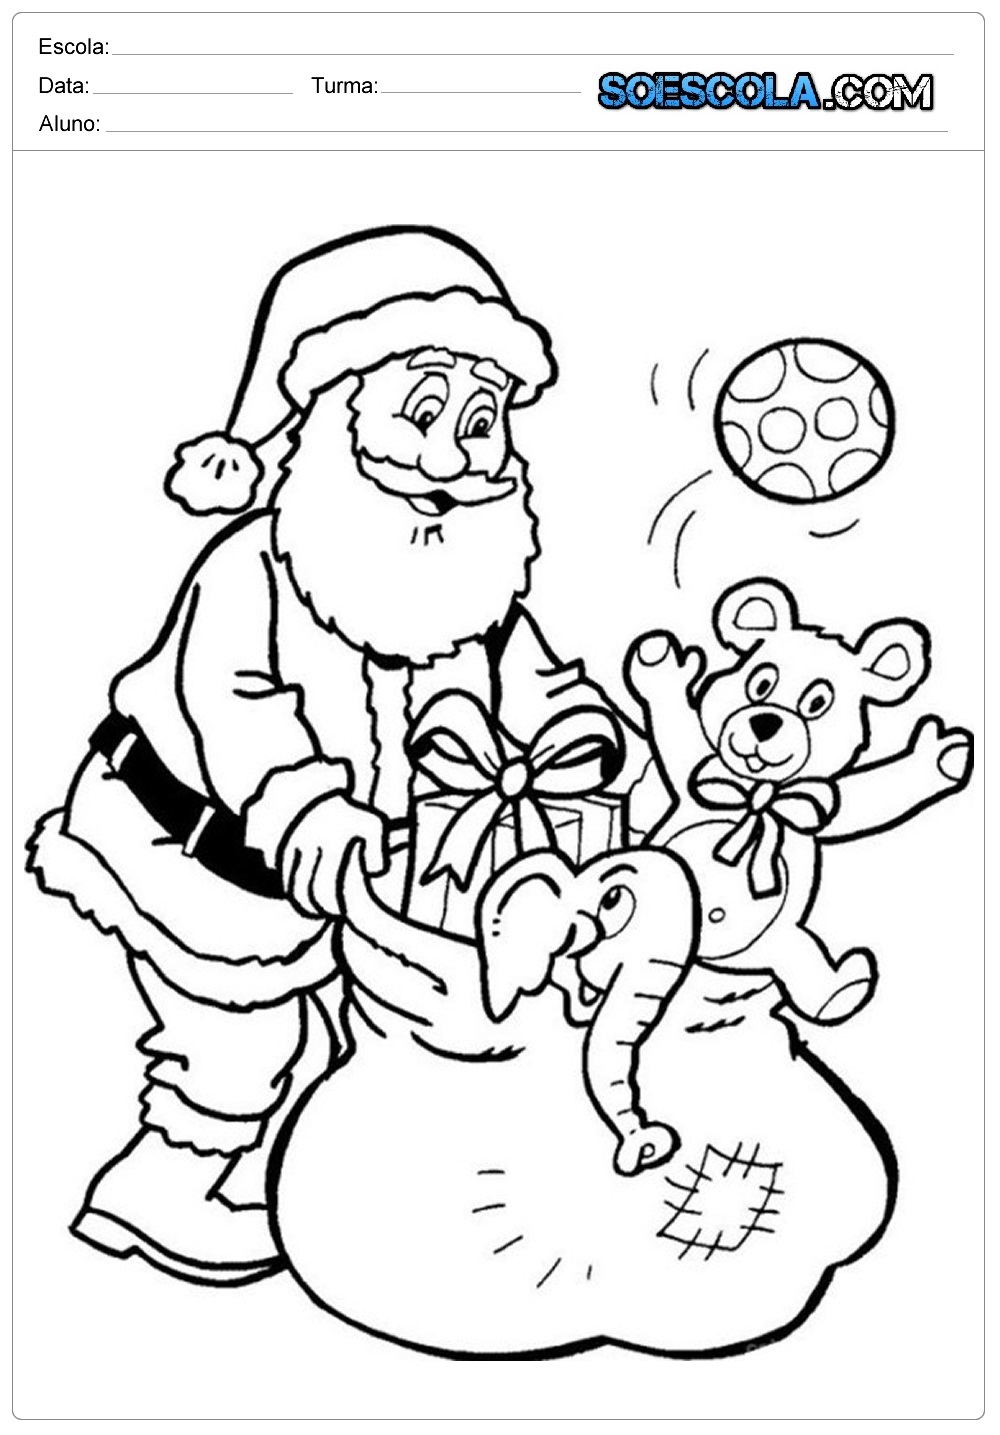 Desenho Para Colorir Feliz Natal - Imagens Grátis Para Imprimir - img 28185